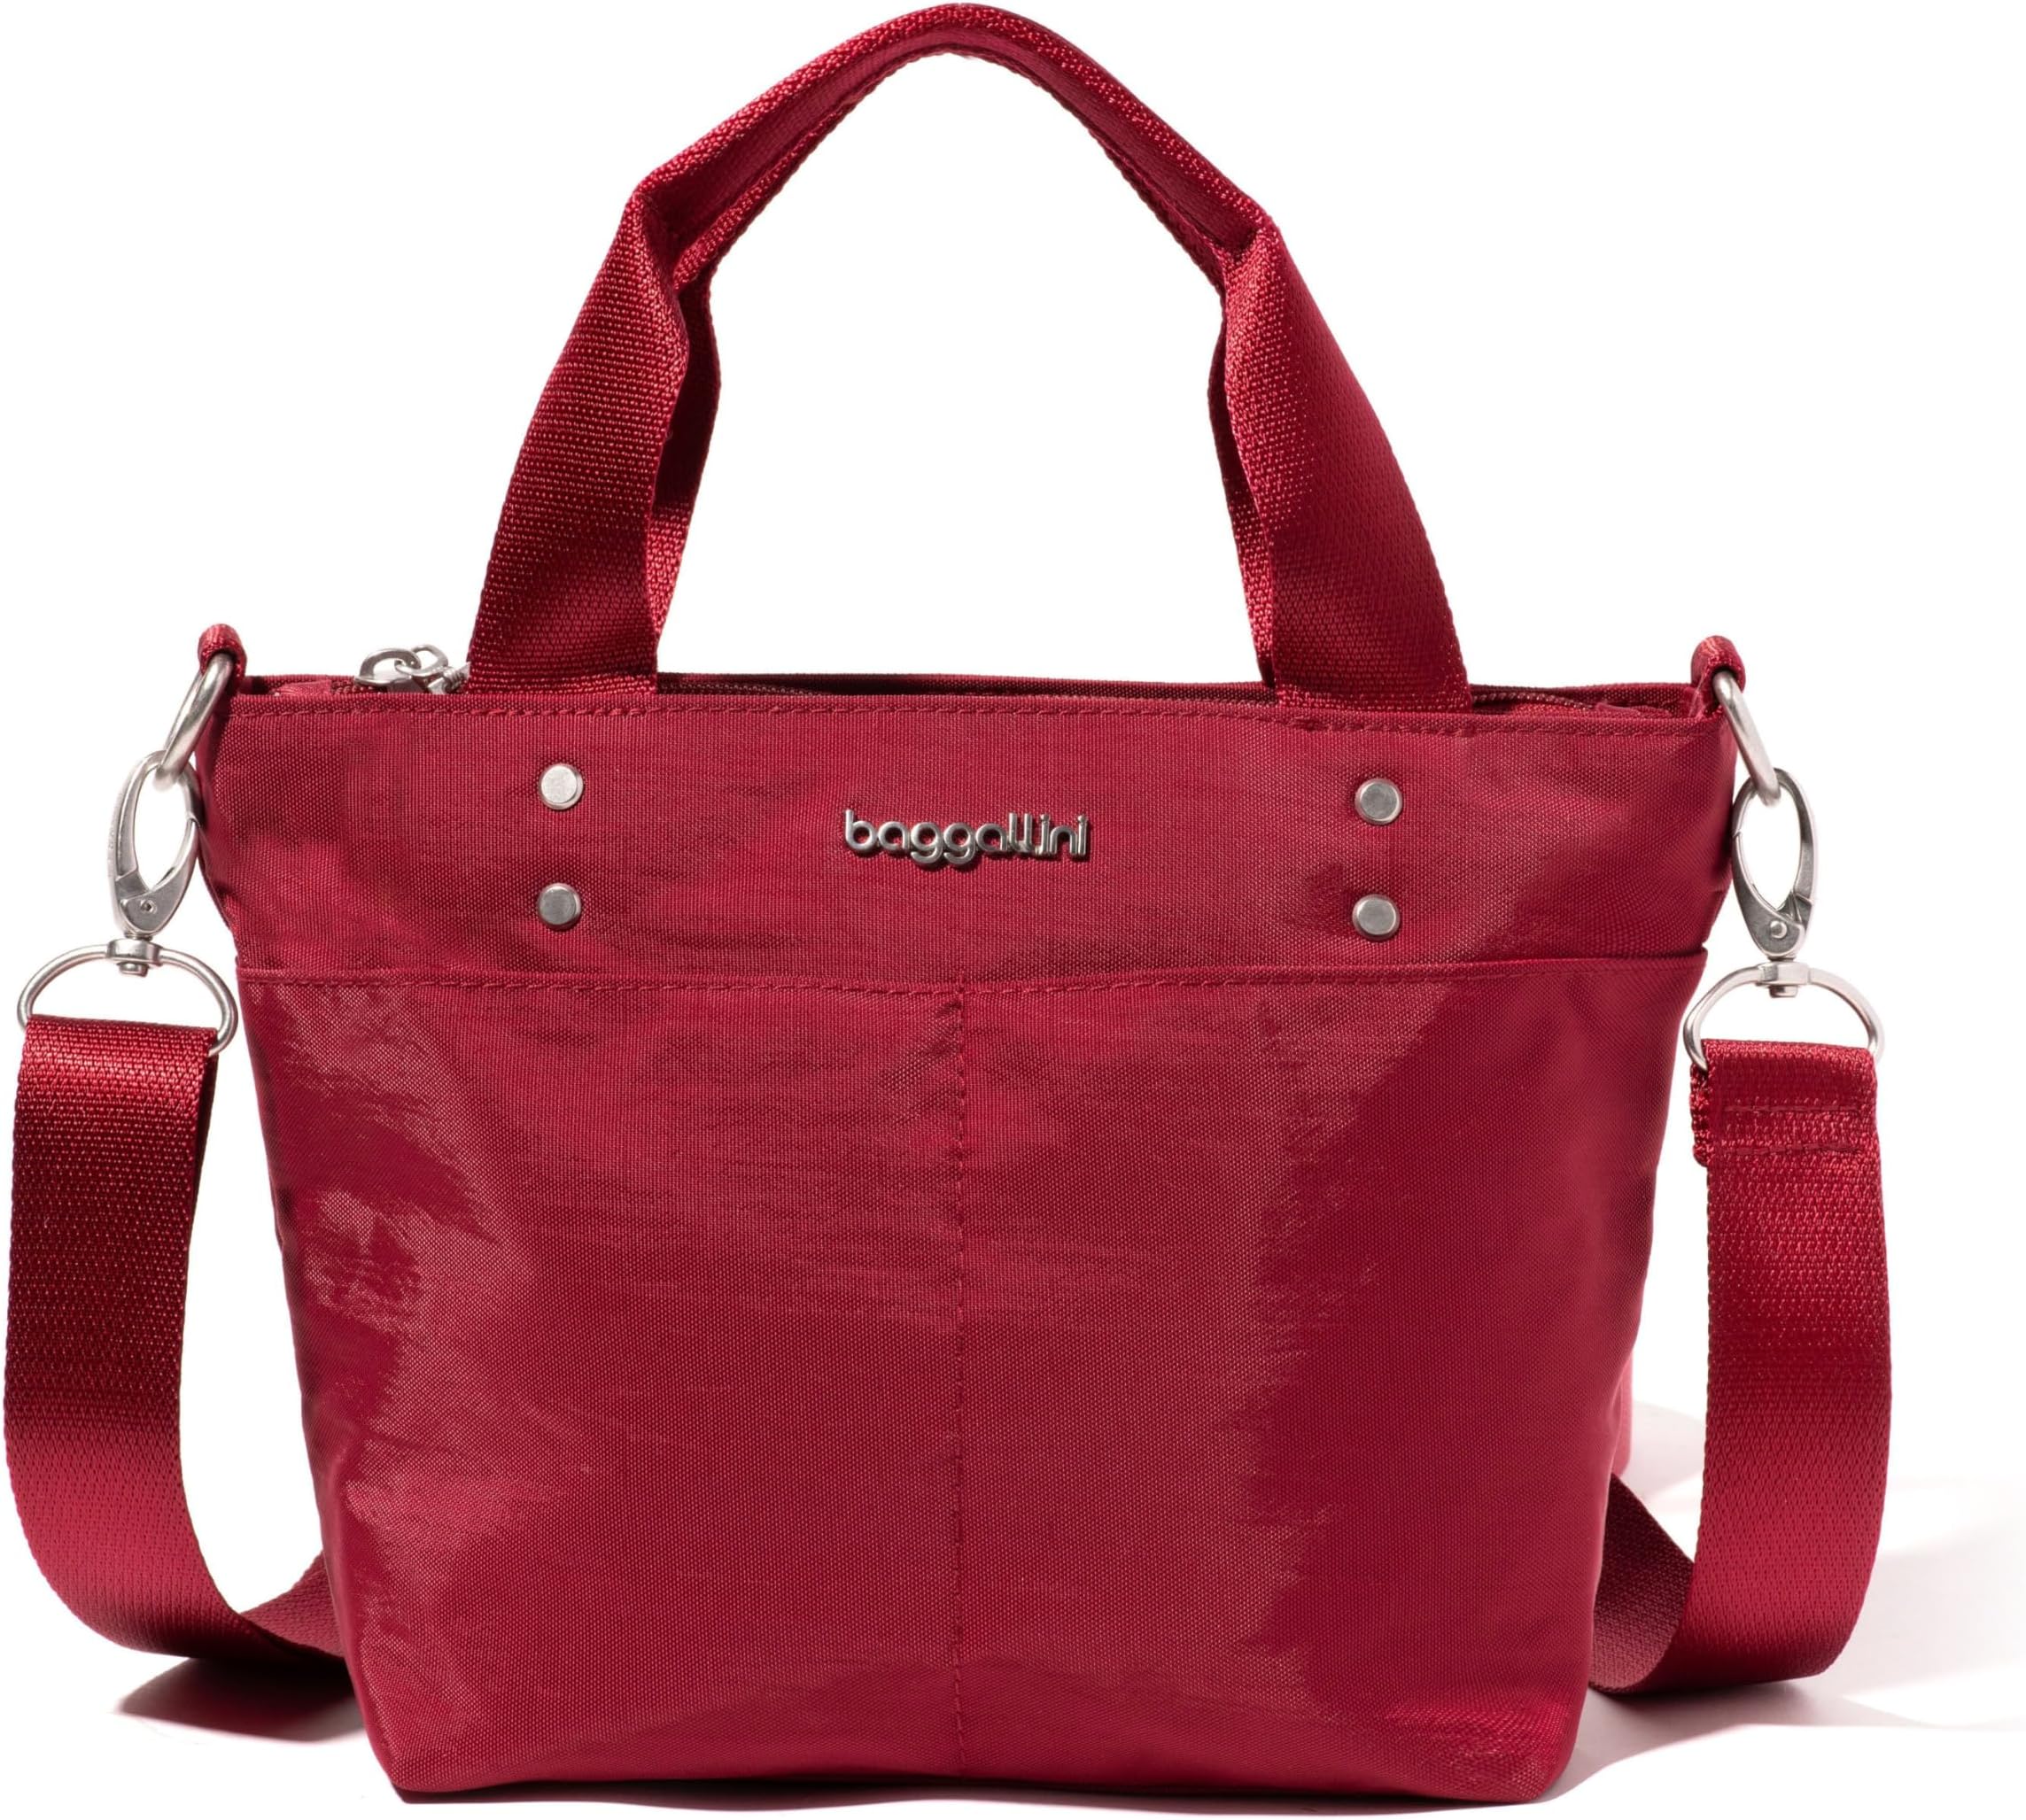 Мини-сумка для переноски Baggallini, рубиново-красный